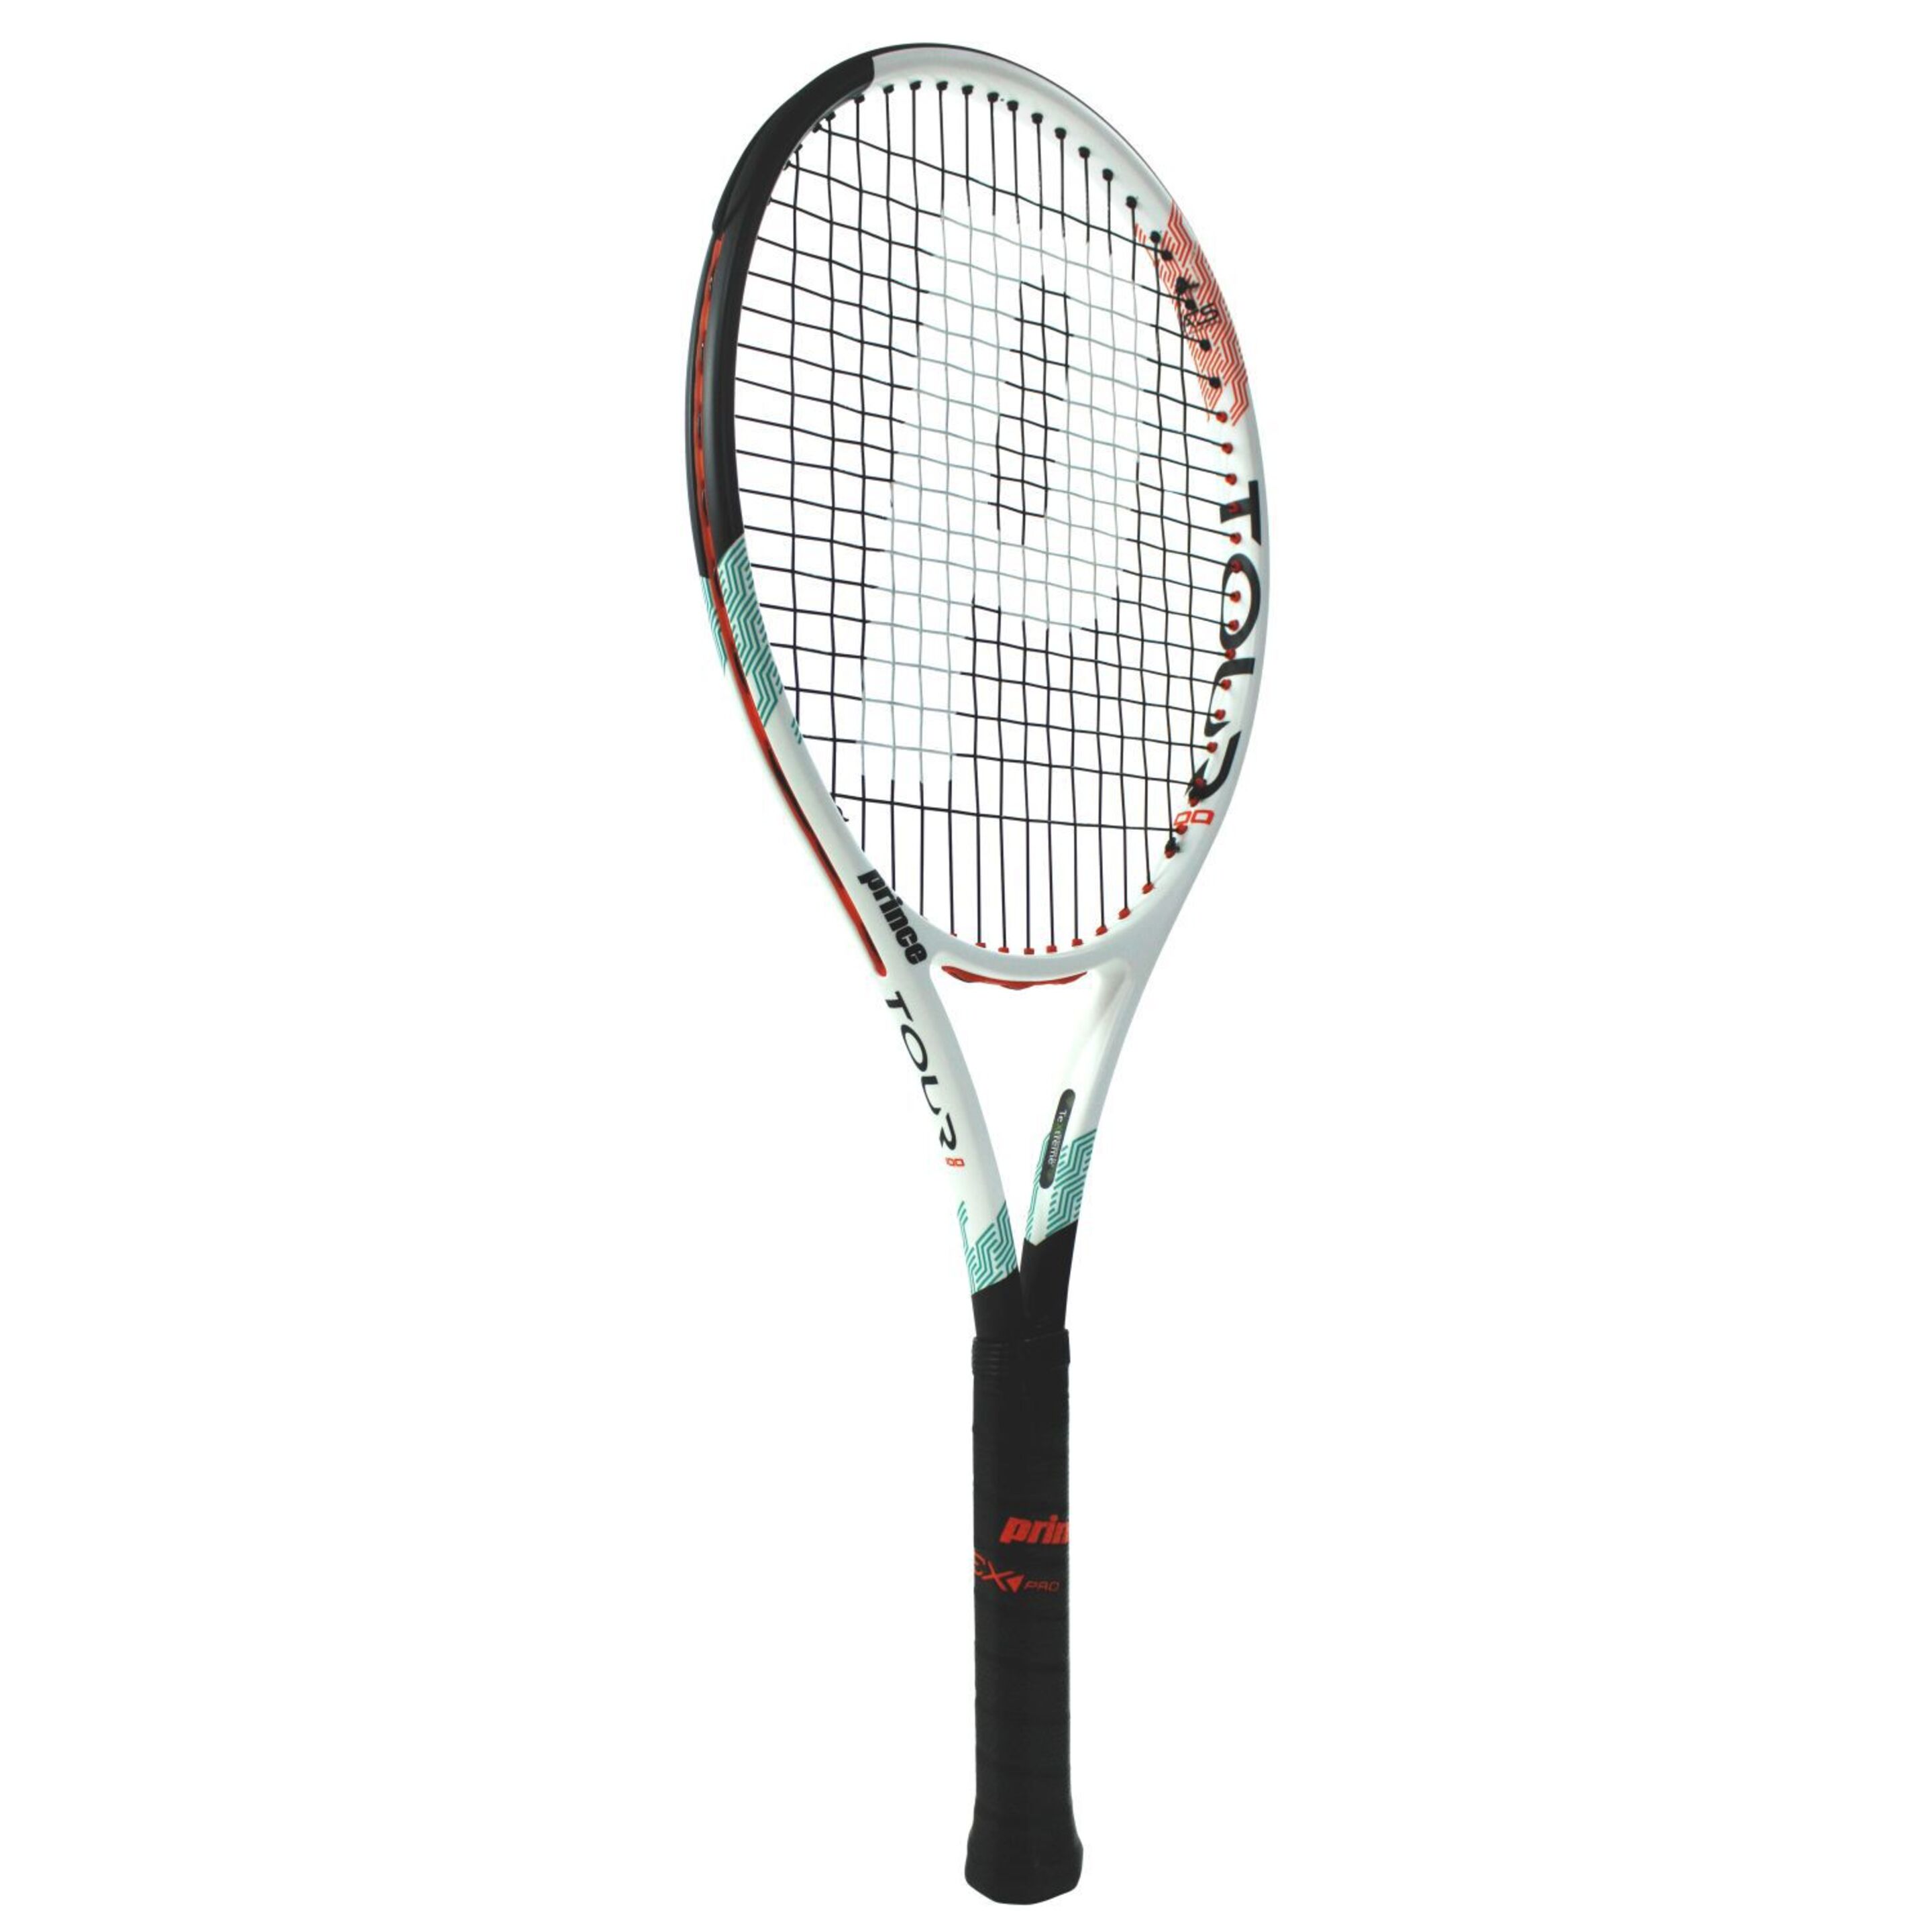 Raqueta De Tenis Prince Txt Ats Tour 95 320 G (sin Encordar Y Sin Funda) - blanco-verde - 